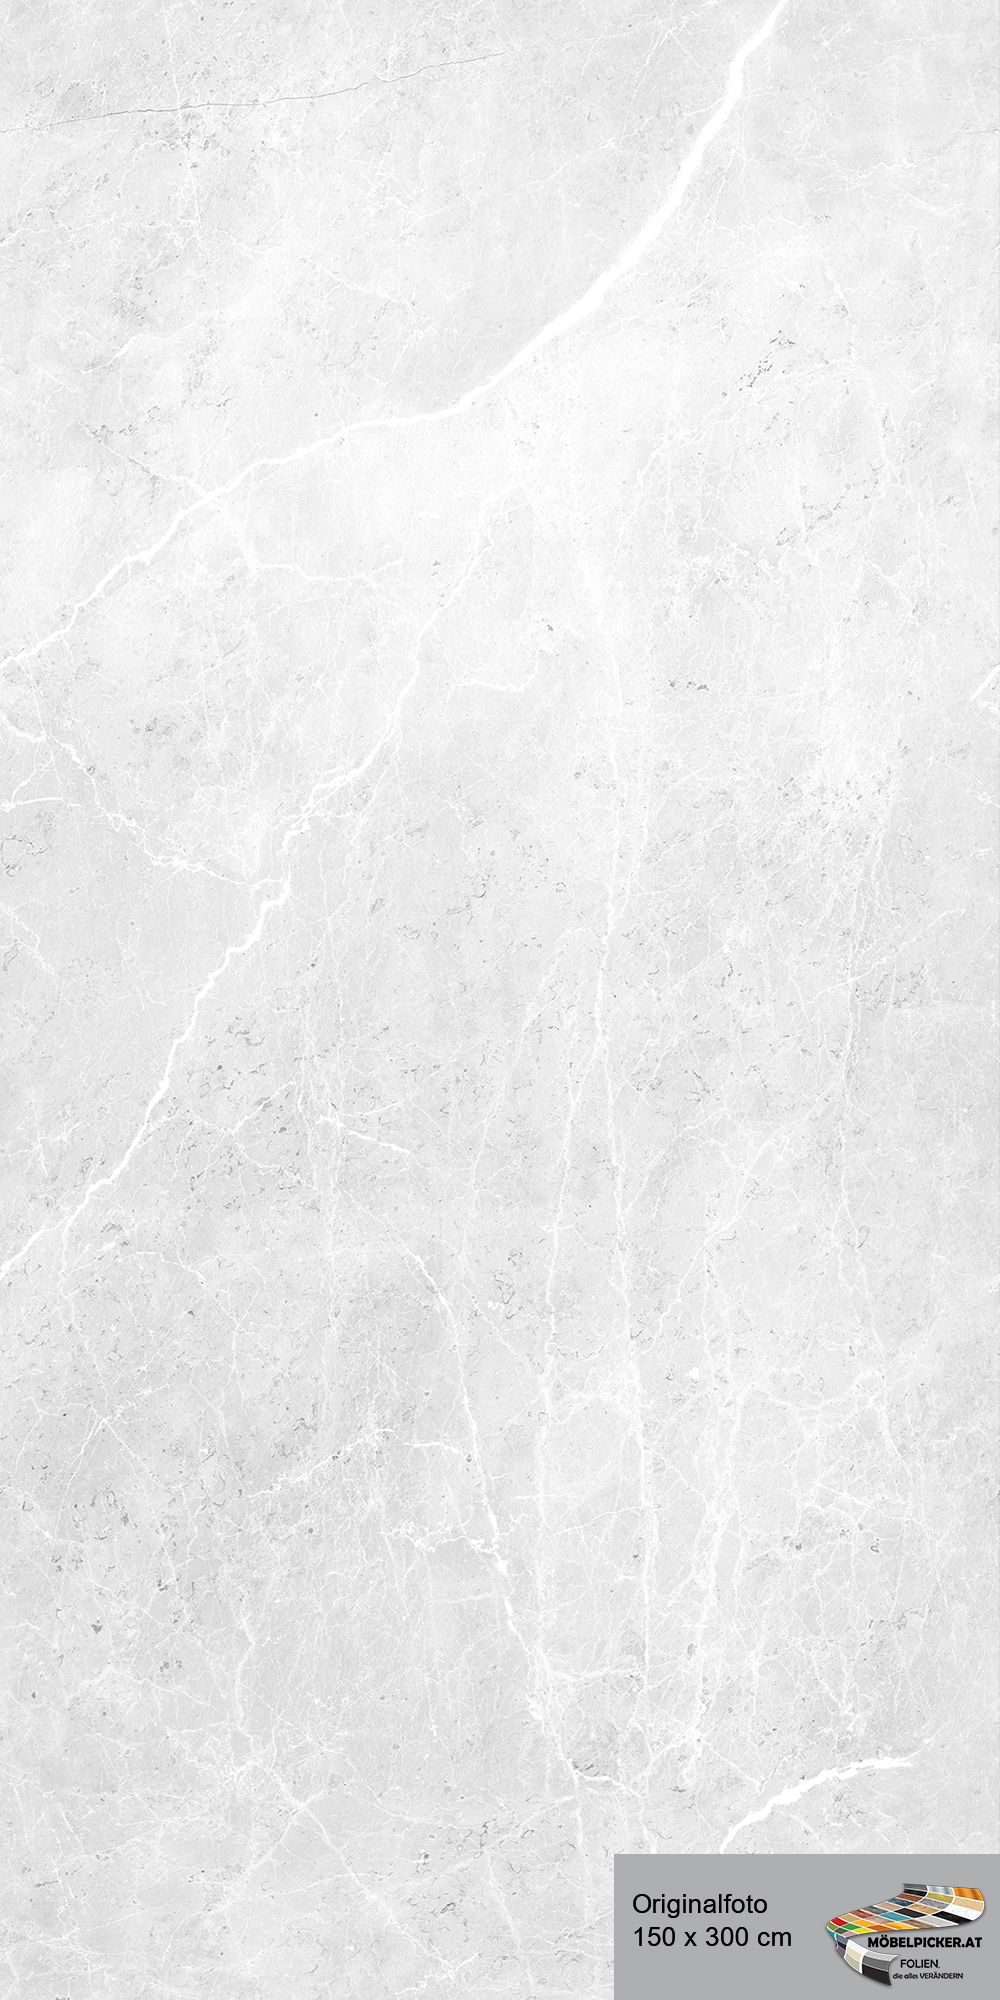 Alu-Design-Platte Aragon weiß - Aluminiumverbundplatte für Bäder, WC, Büro, Wände, Wohnzimmer